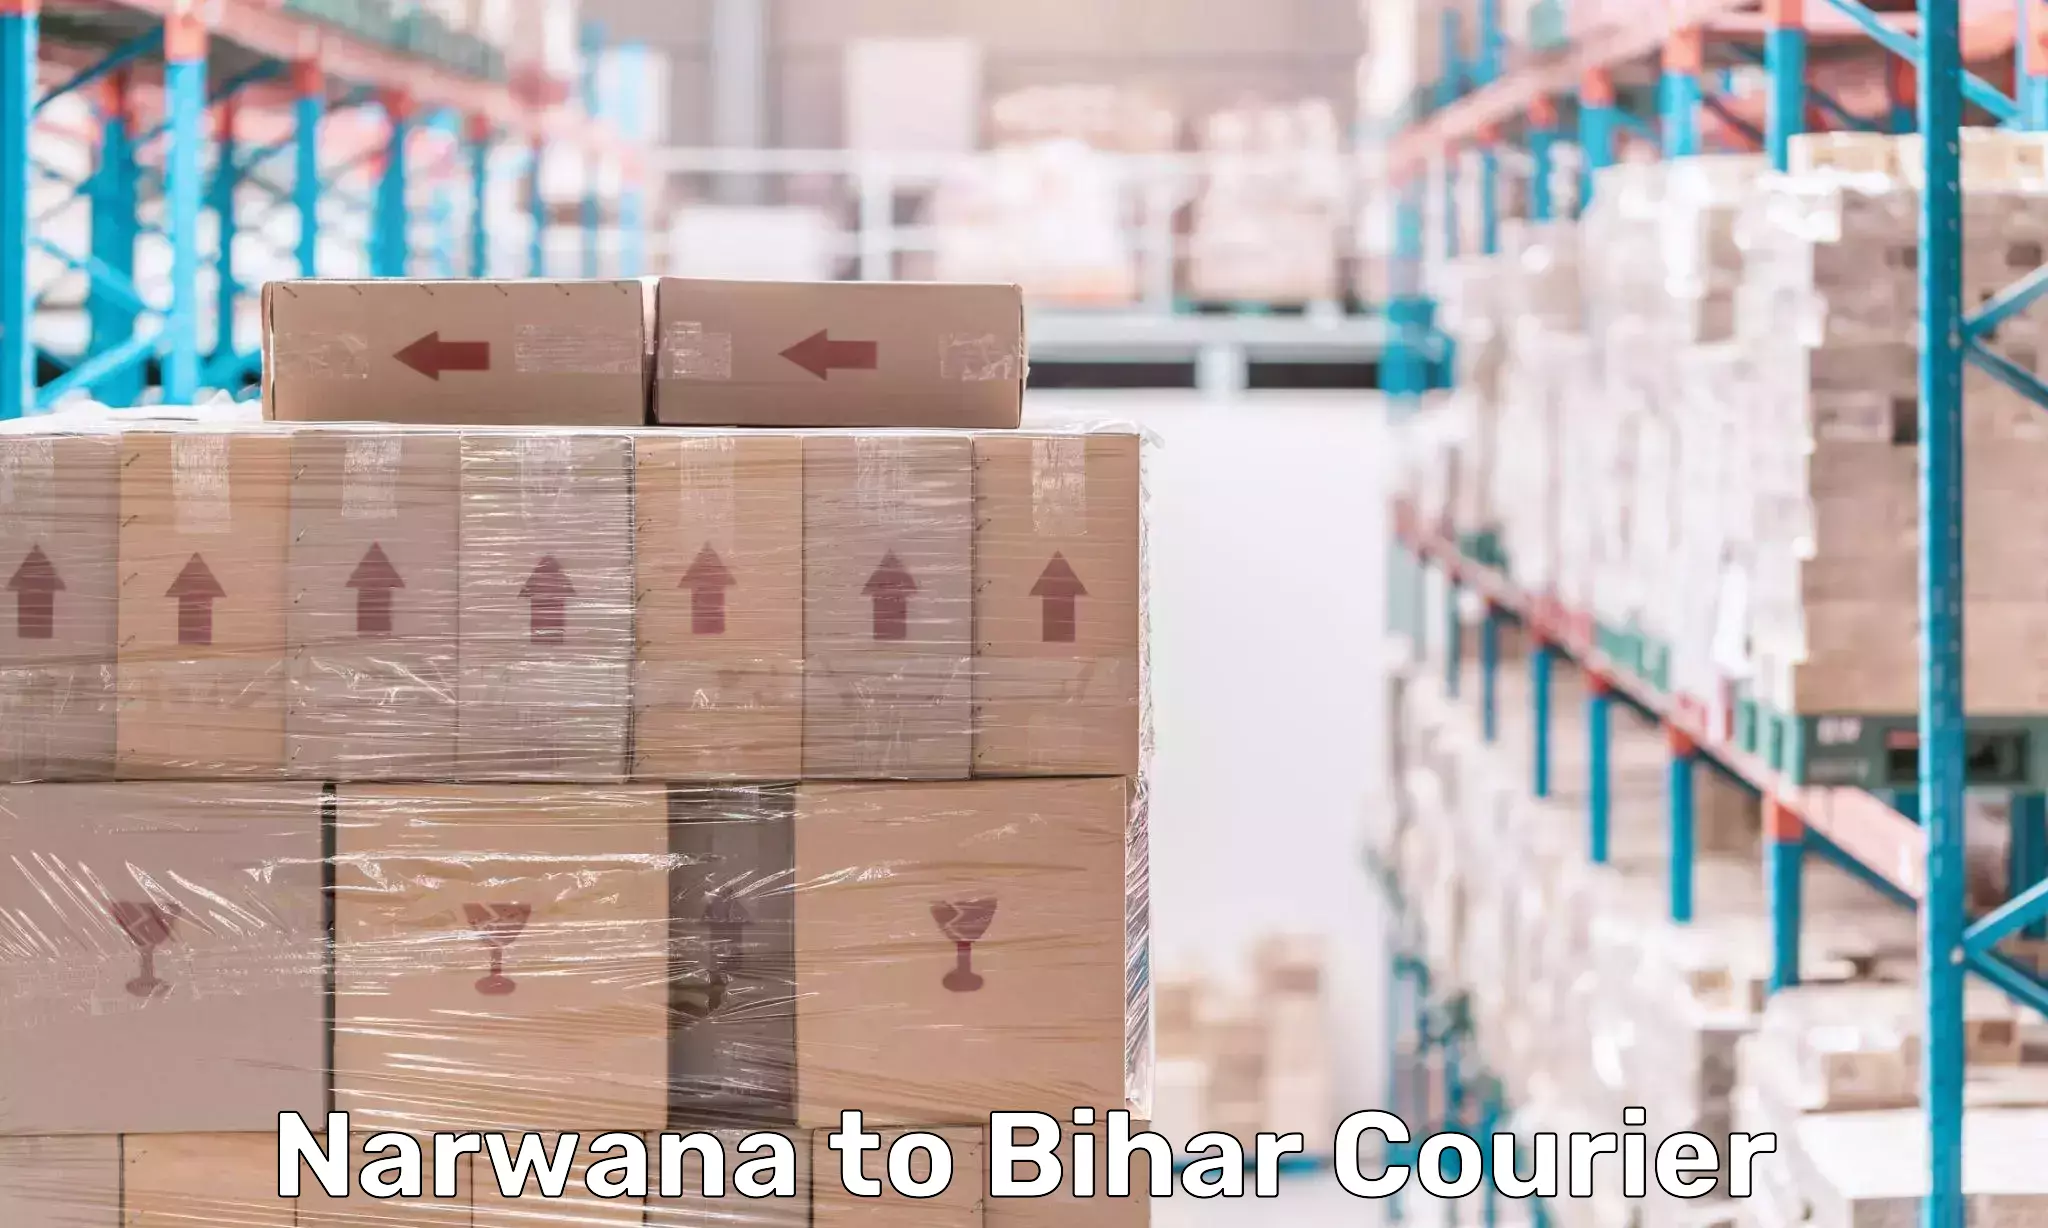 Doorstep delivery service Narwana to Bihar